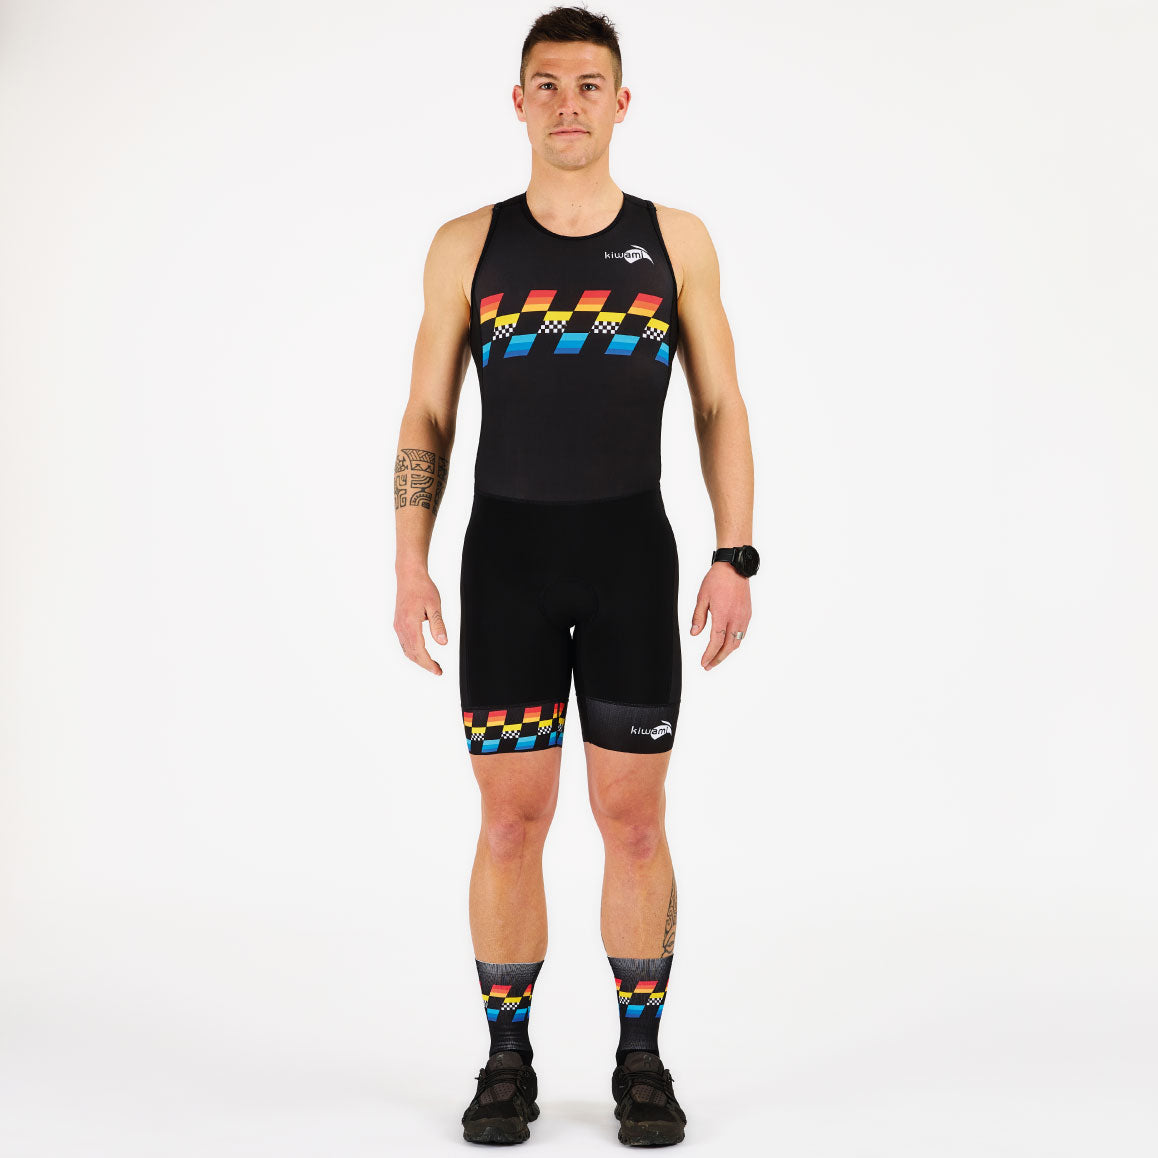 La combinaison trifonction kiwami sports homme permet d'enchaîner les 3 épreuves du triathlon natation vélo course à pied sans changer de tenue. Fabrication Française